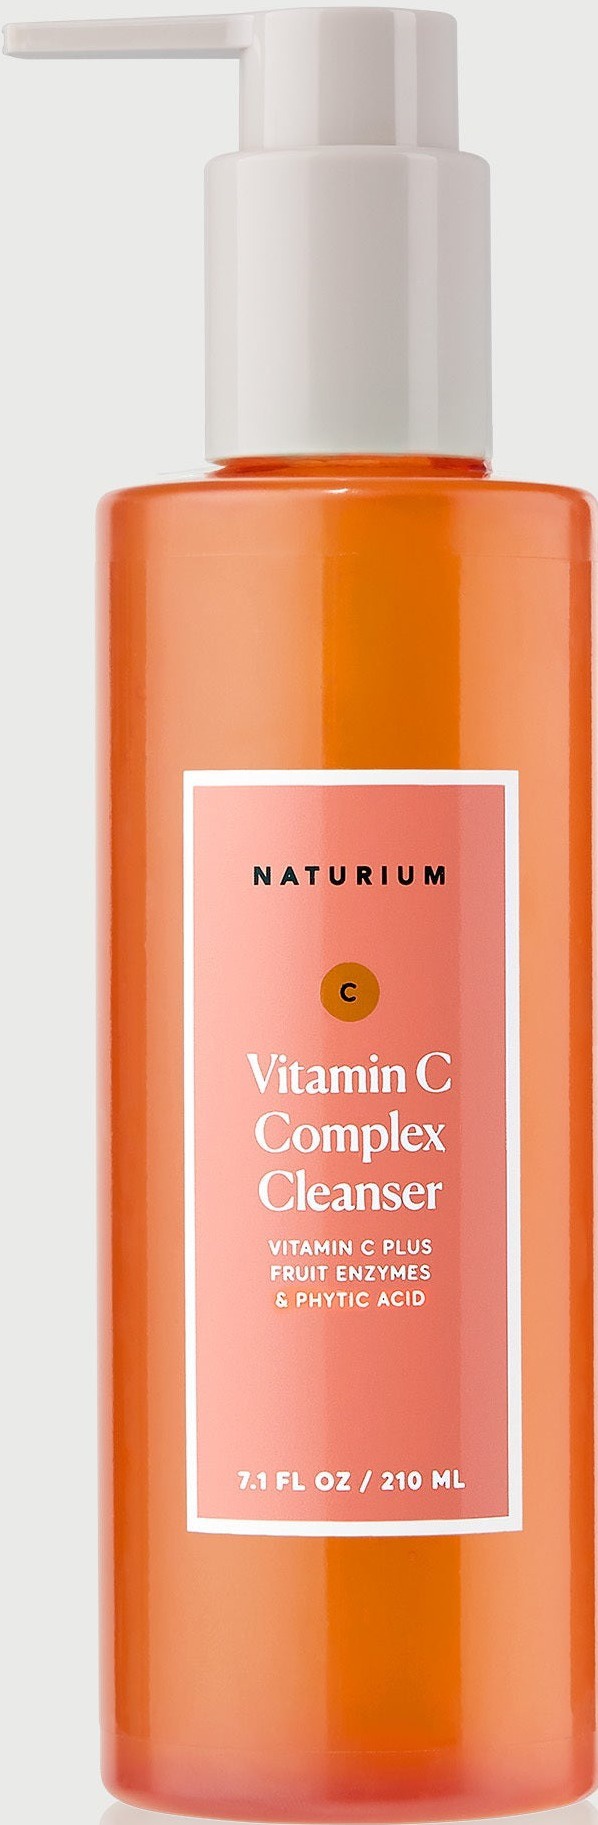 naturium Vitamin C Complex Cleanser